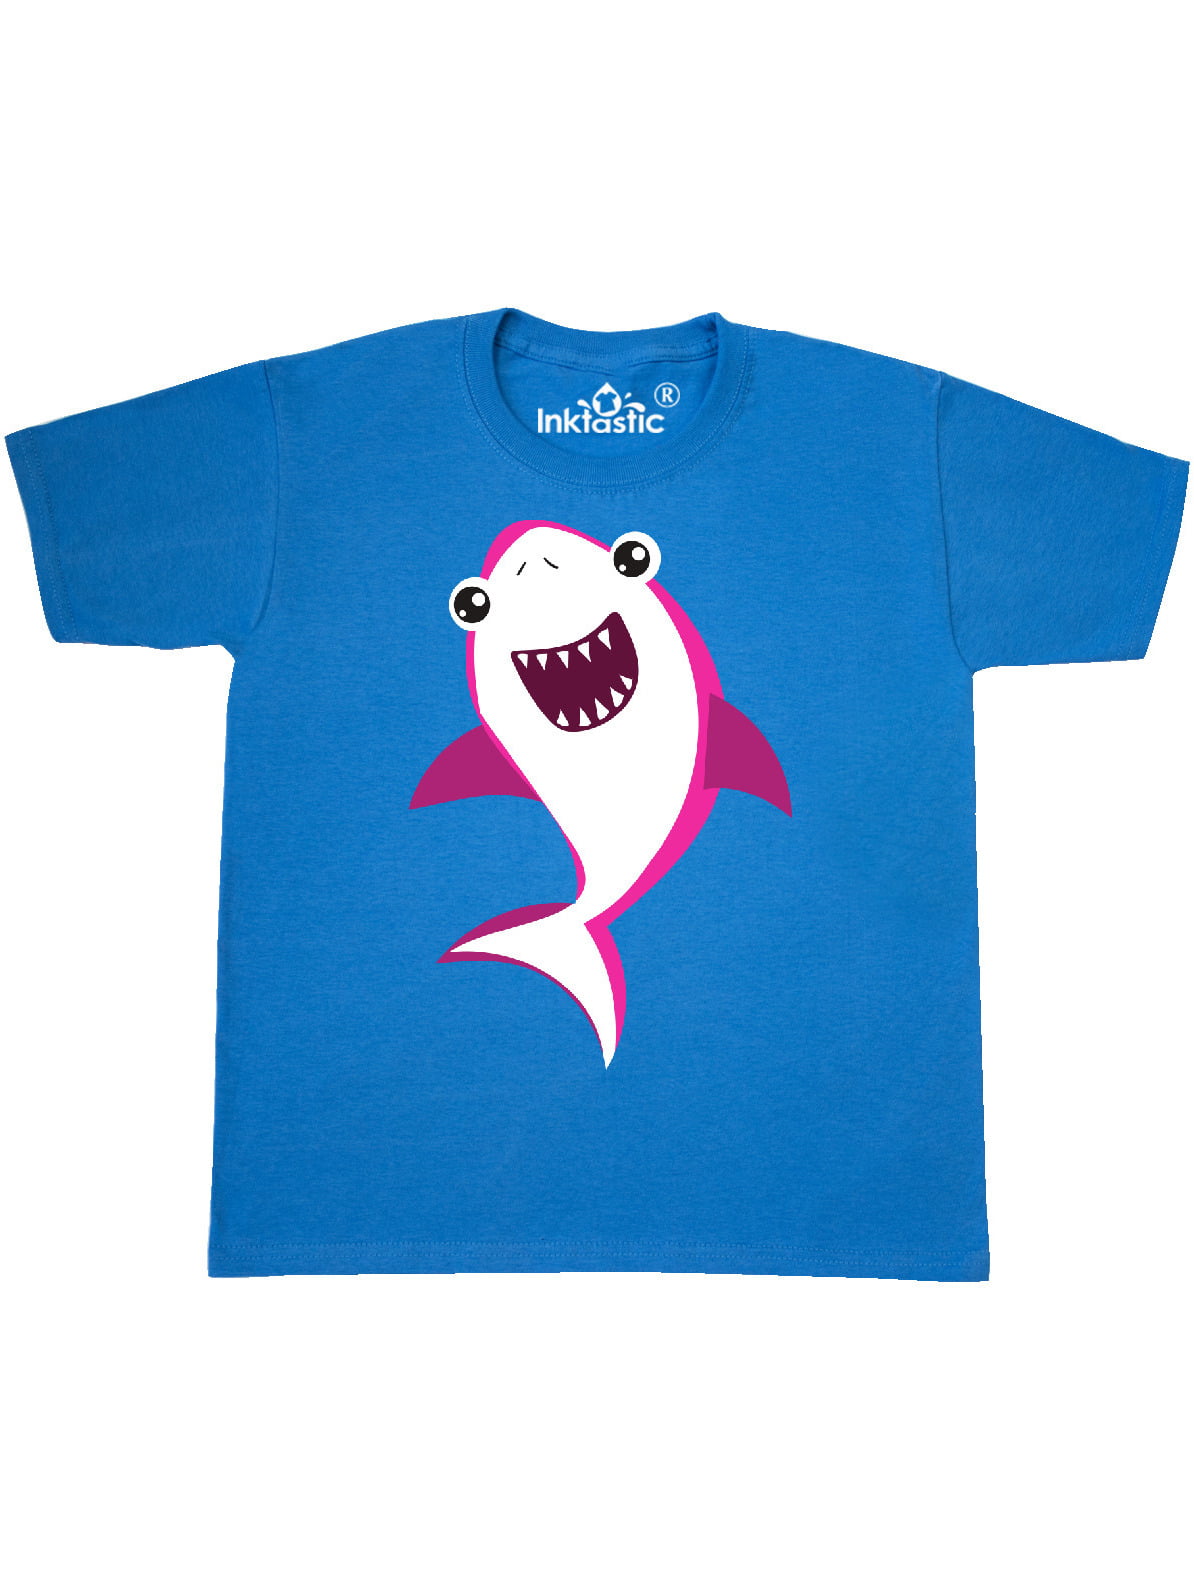 Cute Shark, Little Shark, Pink Shark Youth T-Shirt - Walmart.com ...